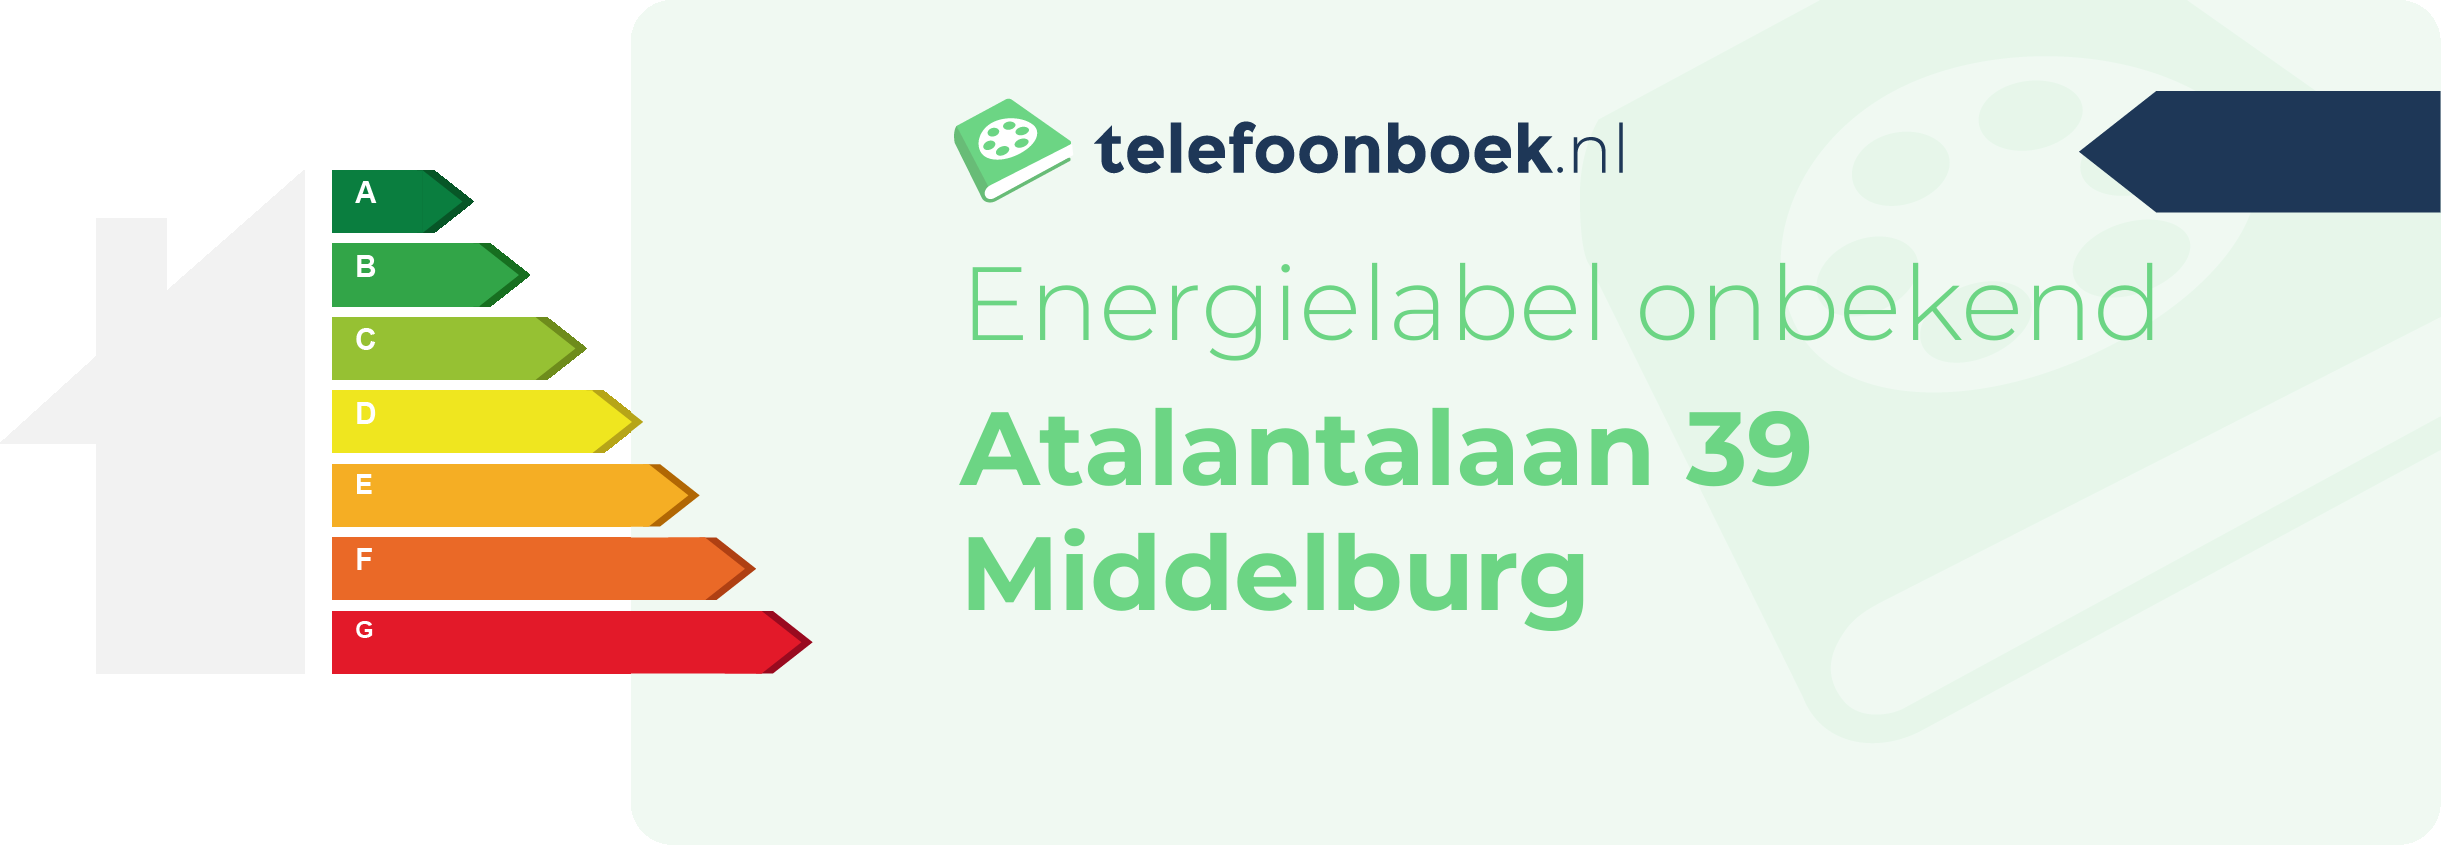 Energielabel Atalantalaan 39 Middelburg